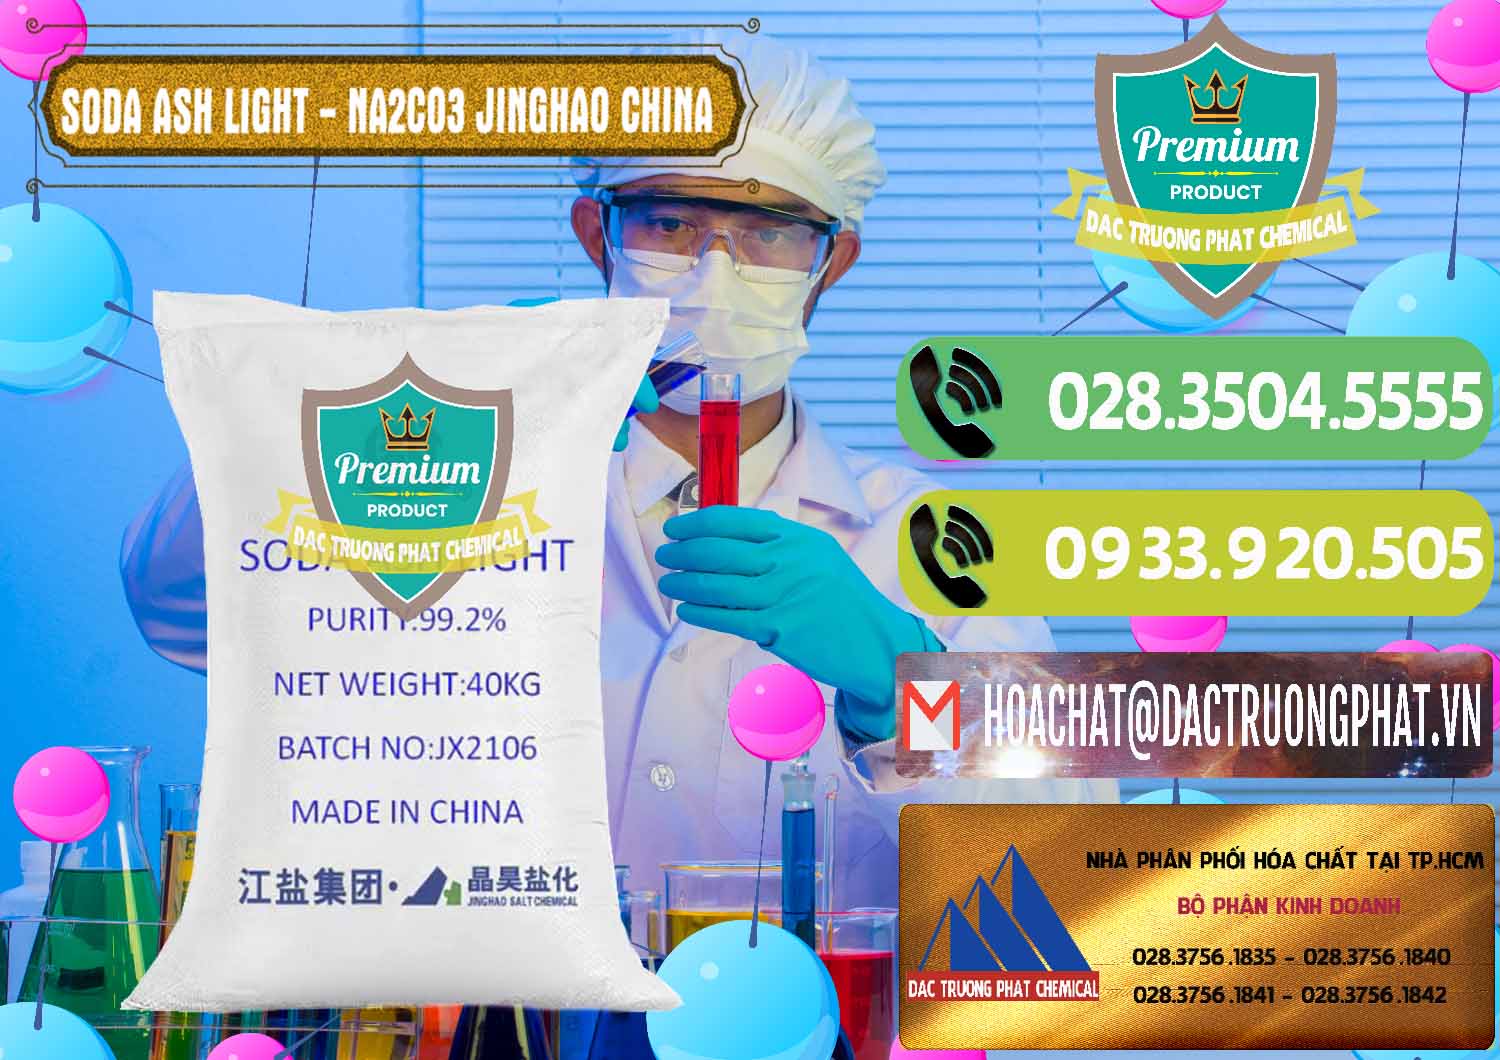 Cty bán - cung cấp Soda Ash Light - NA2CO3 Jinghao Trung Quốc China - 0339 - Cung cấp hóa chất tại TP.HCM - hoachatmientay.vn